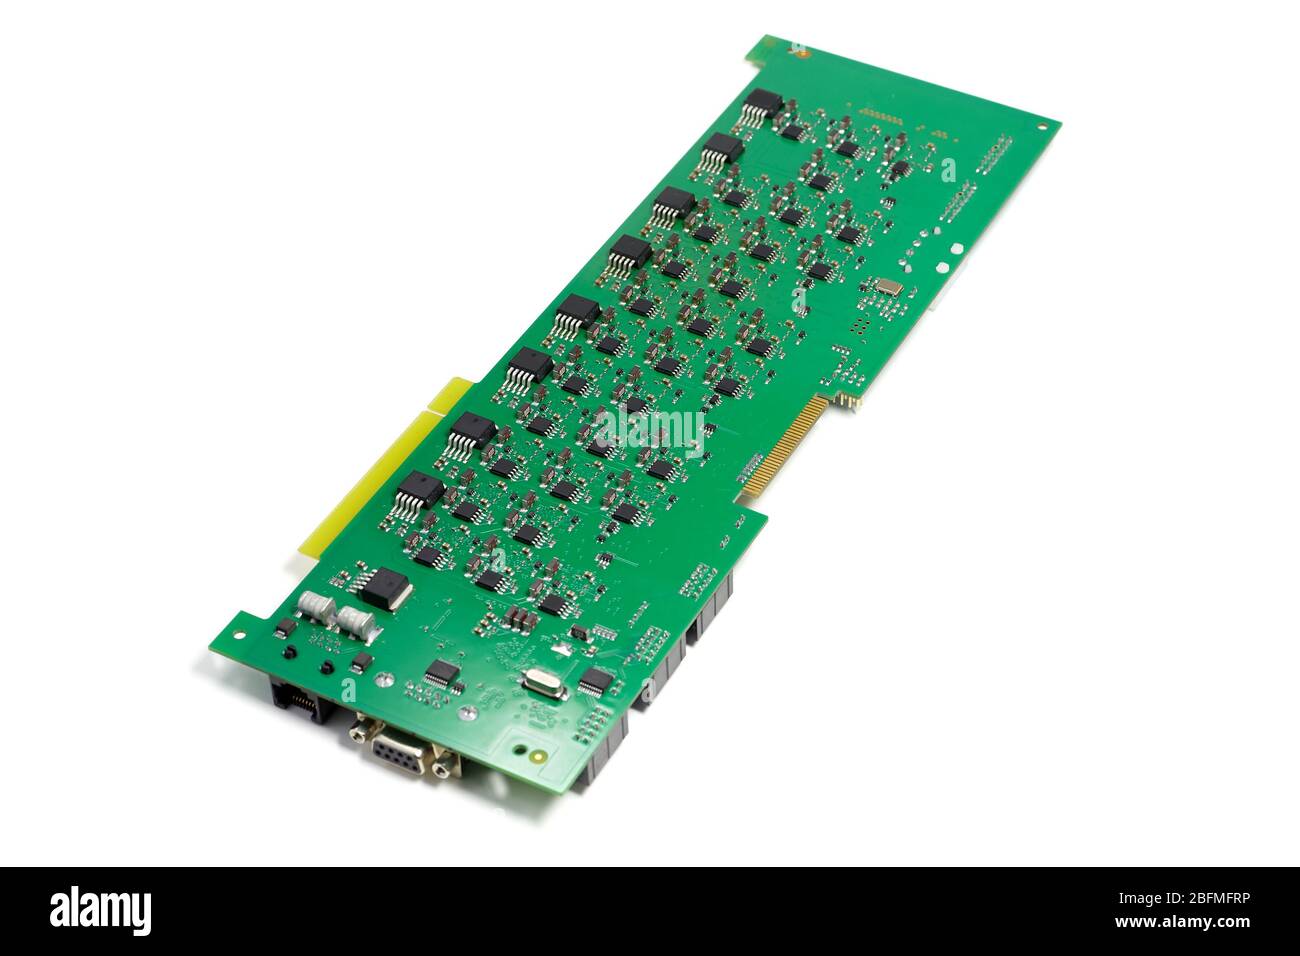 Scheda elettronica a circuito stampato con chip e altri componenti, colore verde, lato posteriore, vista angolata, isolata su sfondo bianco Foto Stock